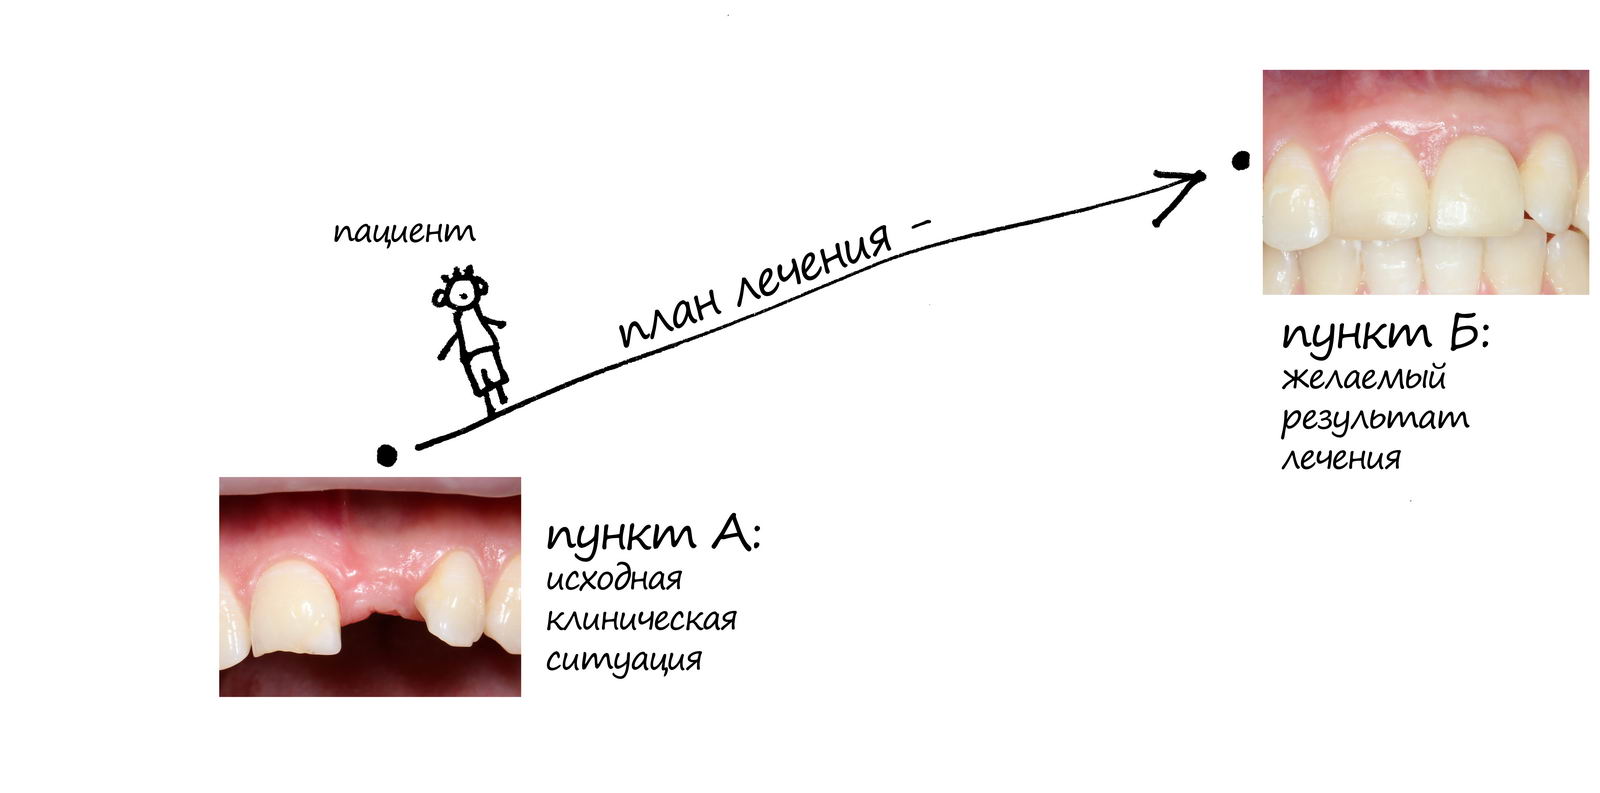 Перед консультацией стоматолога: что нужно знать о планировании и методах стоматологического лечения?